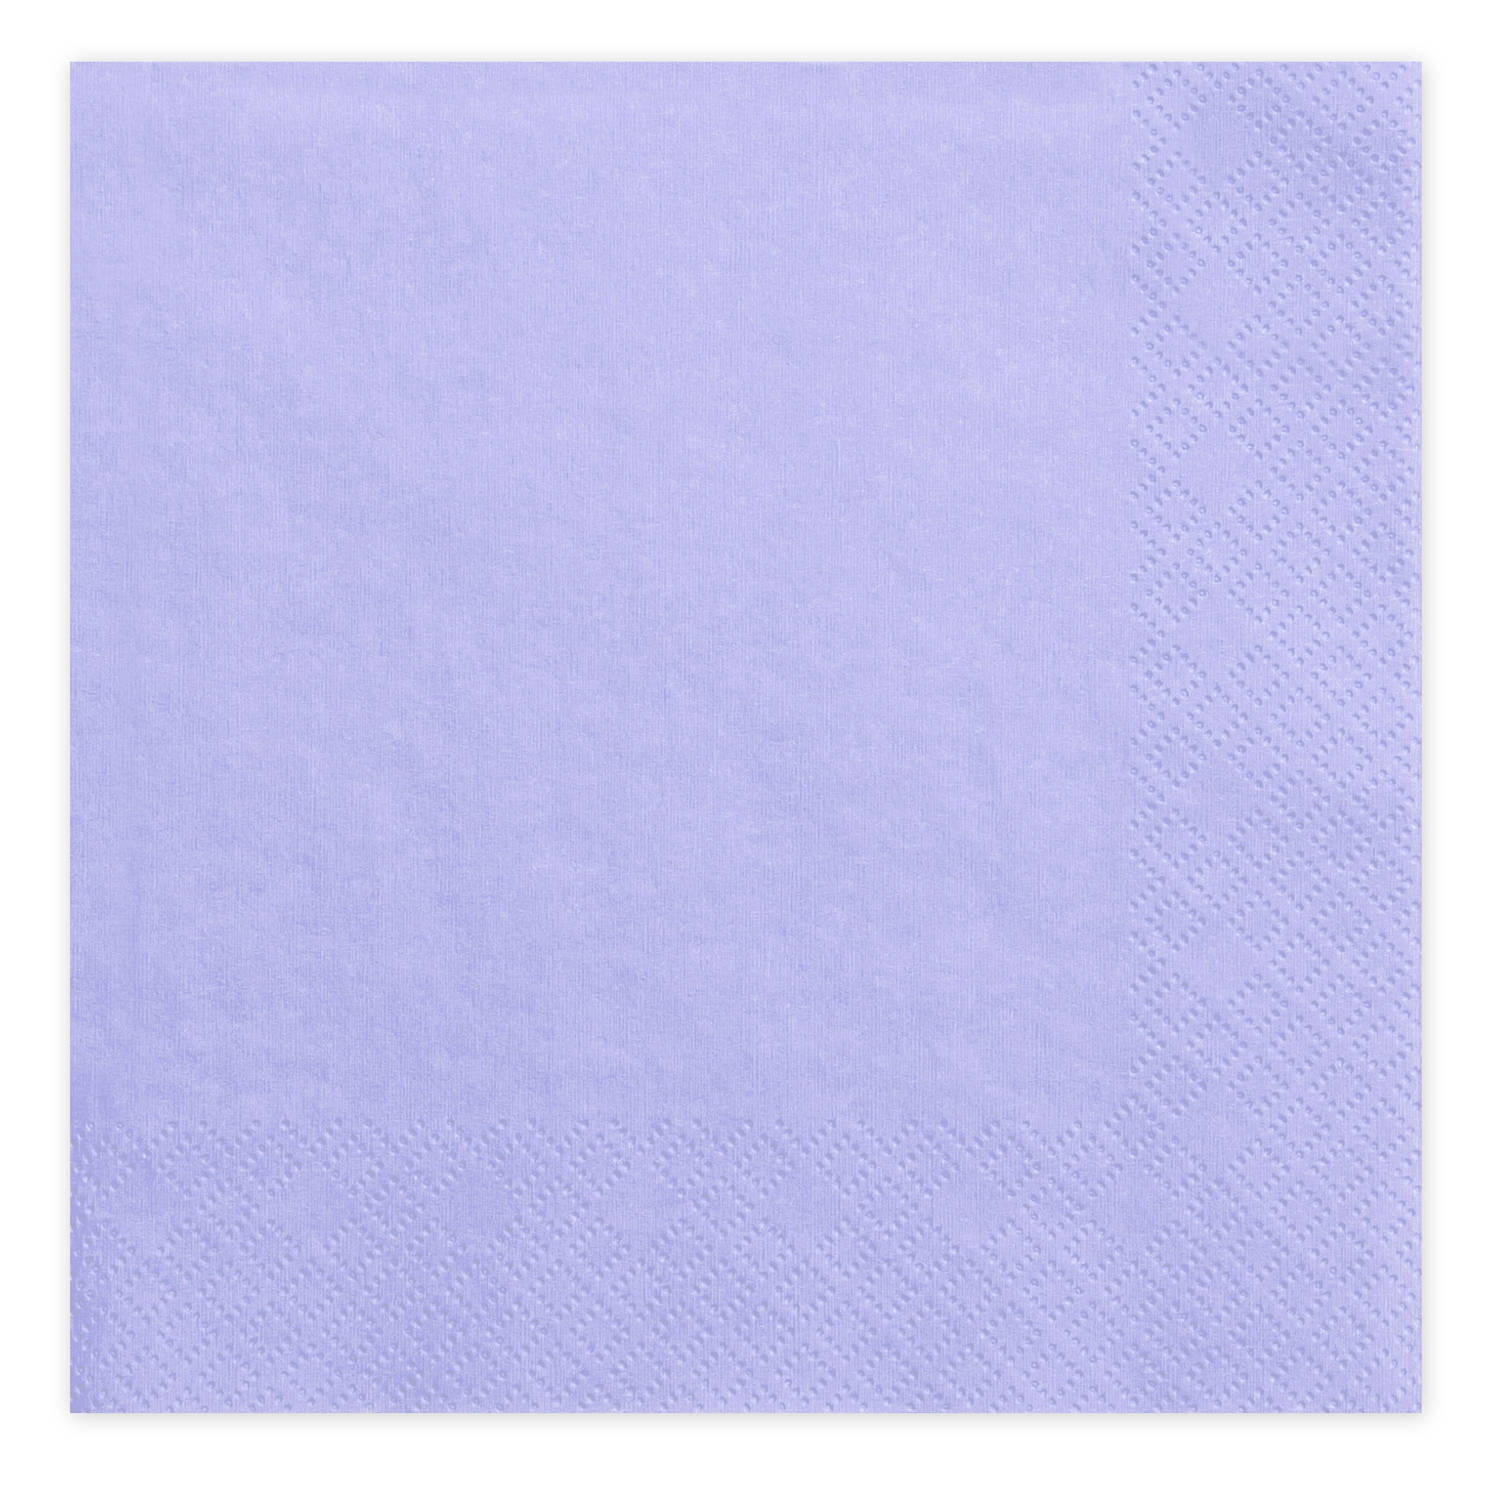 20x Papieren tafel servetten lila paars 33 x 33 cm - Feestservetten